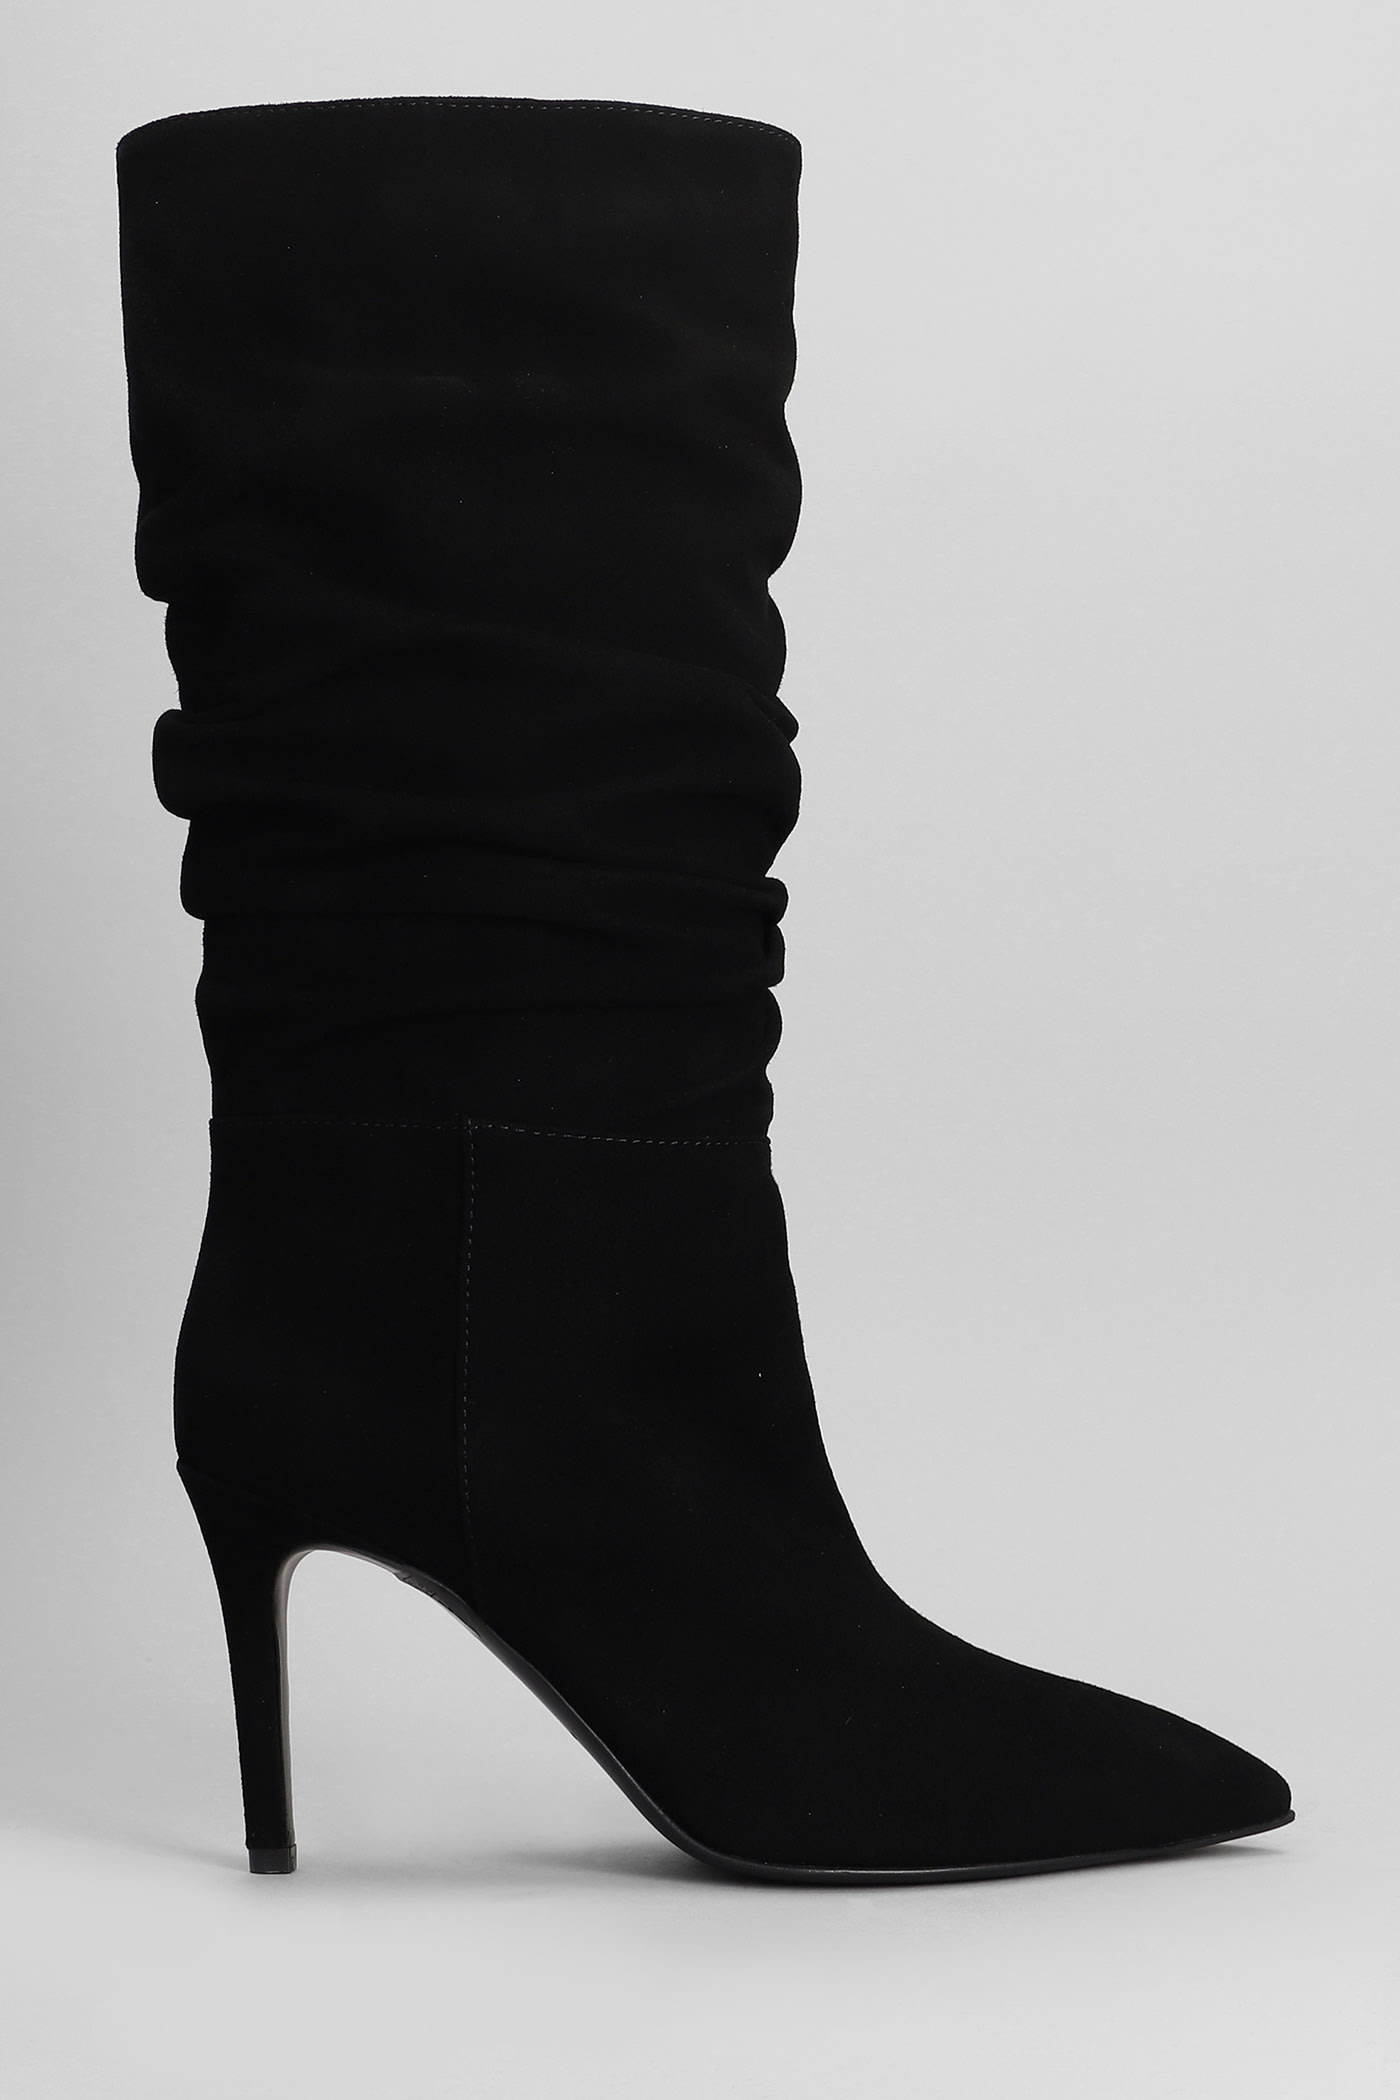 High Heels Boots In Black Suede